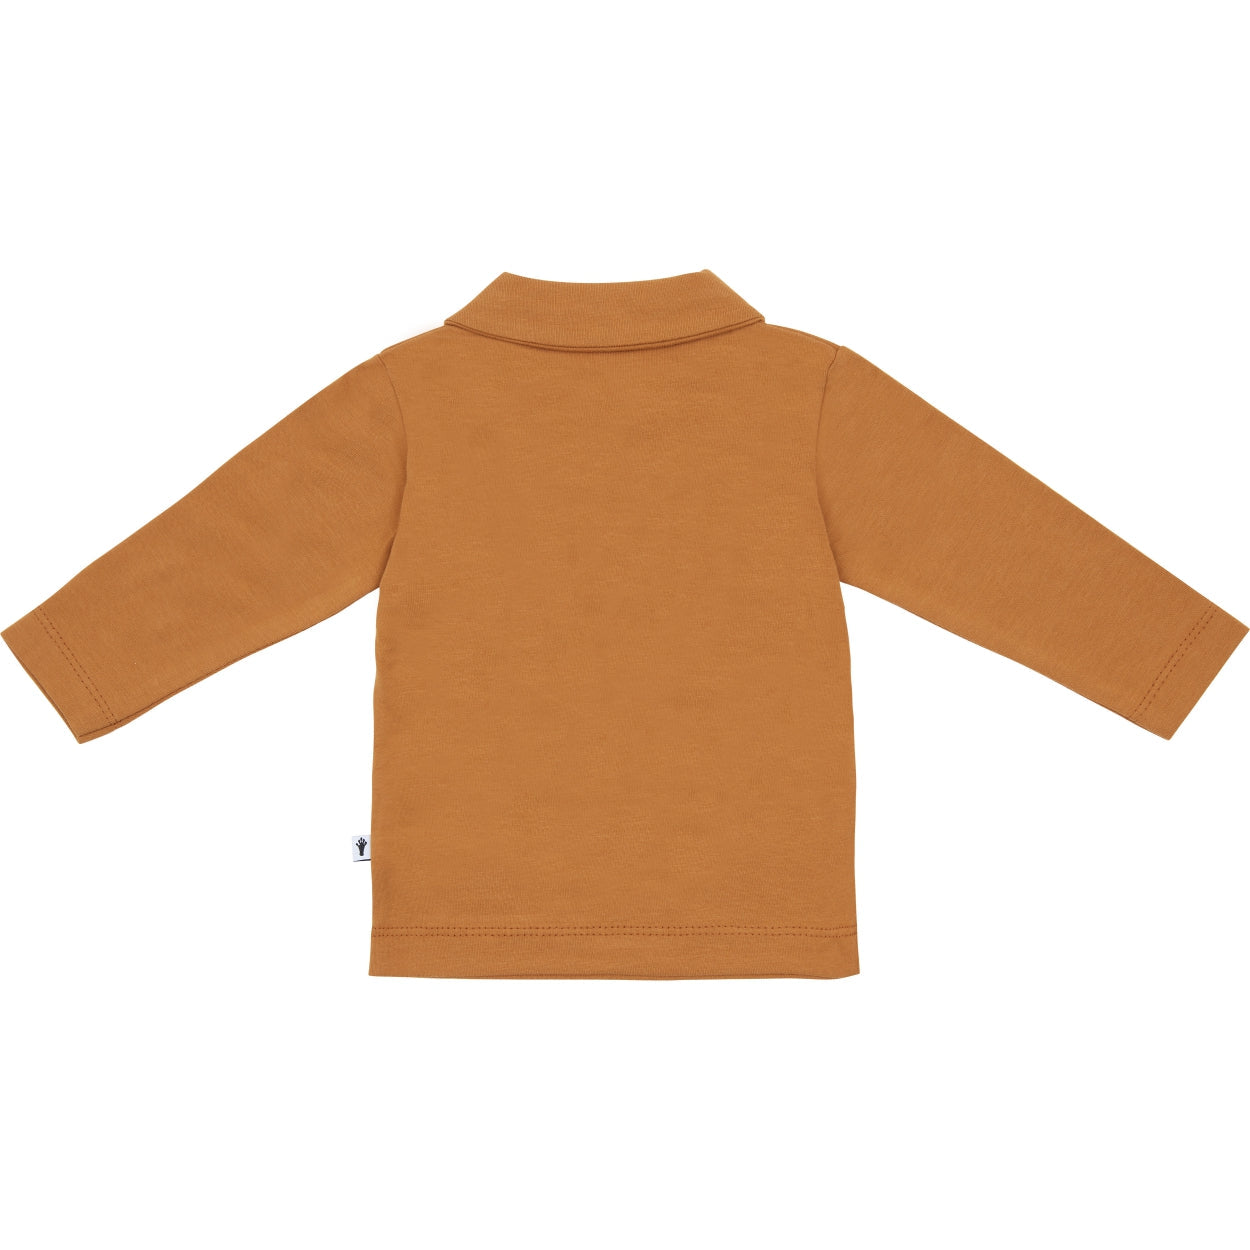 Jongens Polo Shirt van Klein Baby in de kleur Sudan Brown in maat 74.